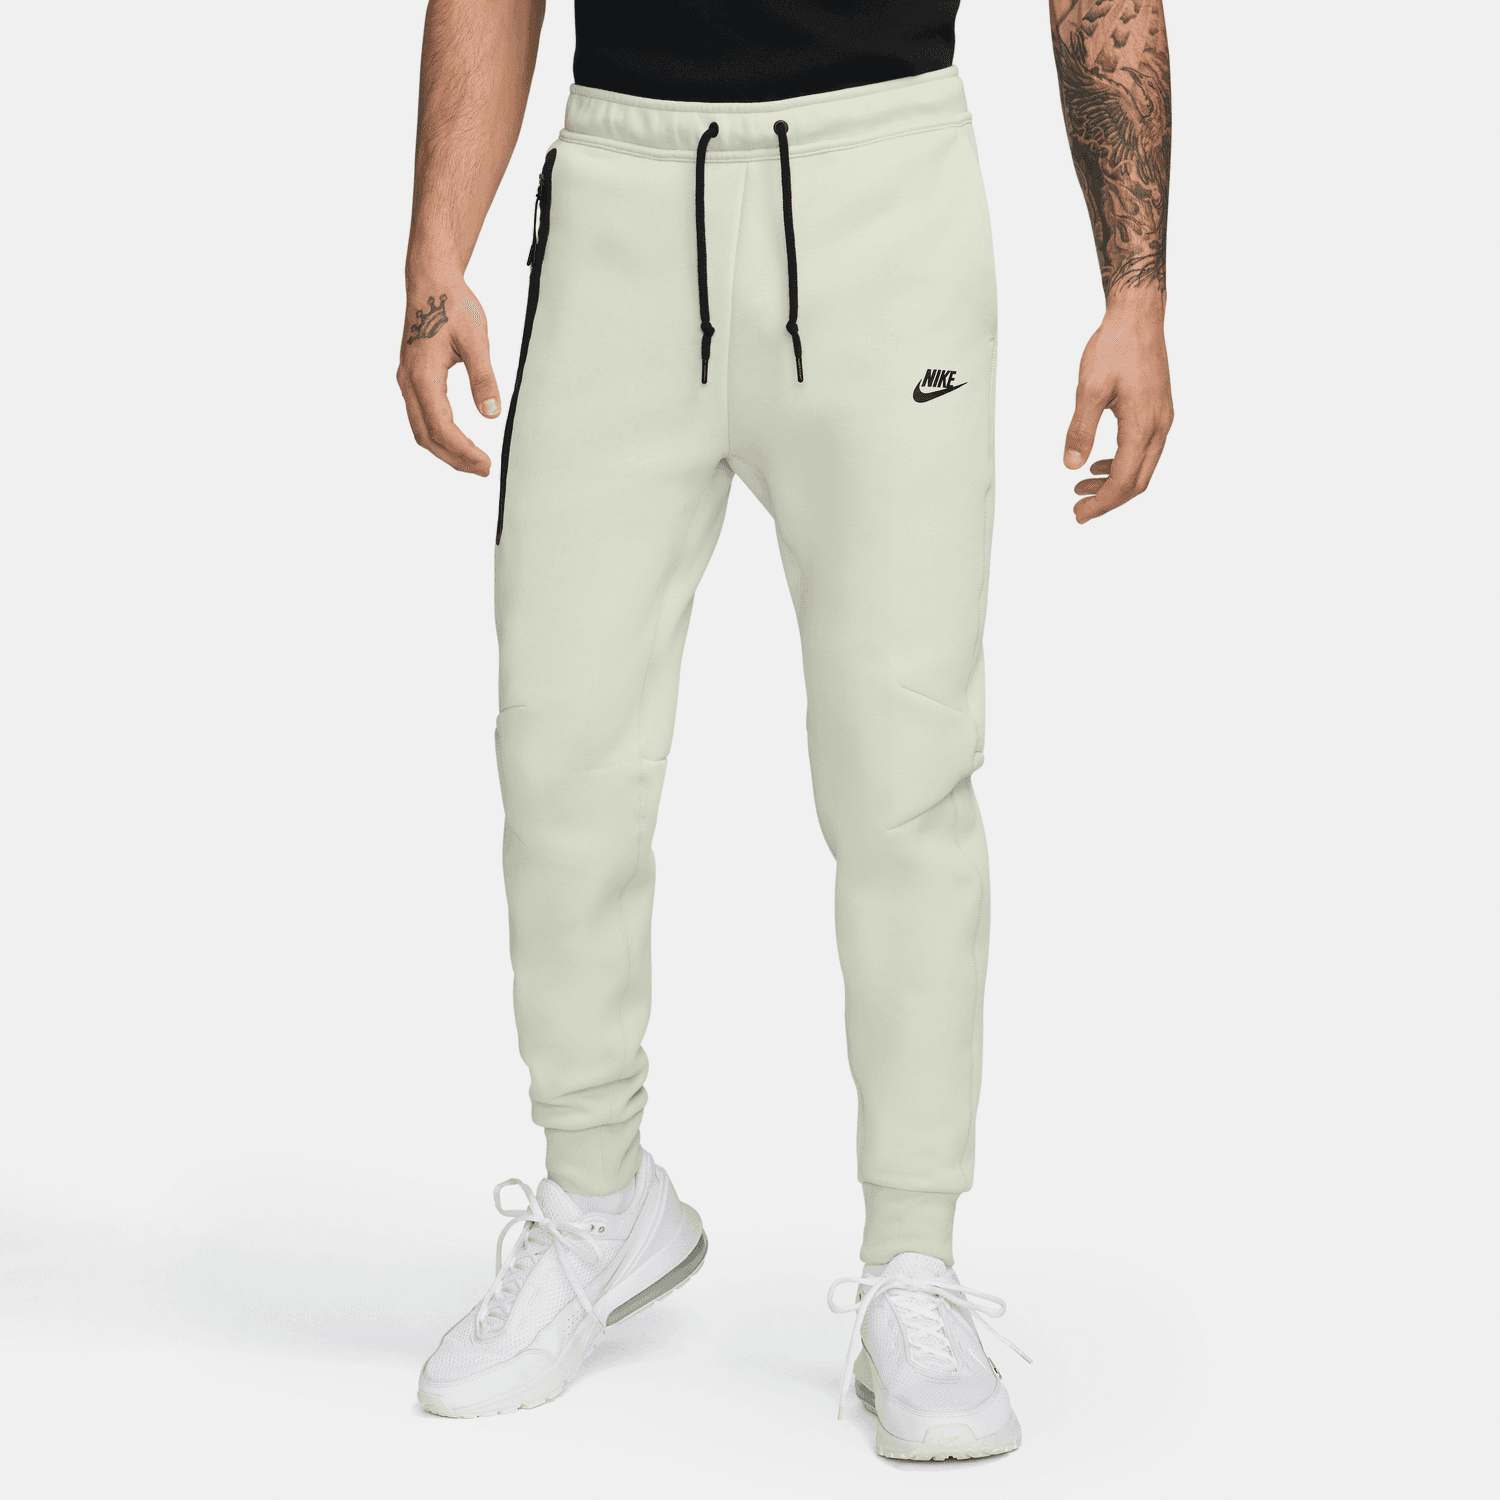 Pantalon Nike Tech Fleece – Beige/Schwarz